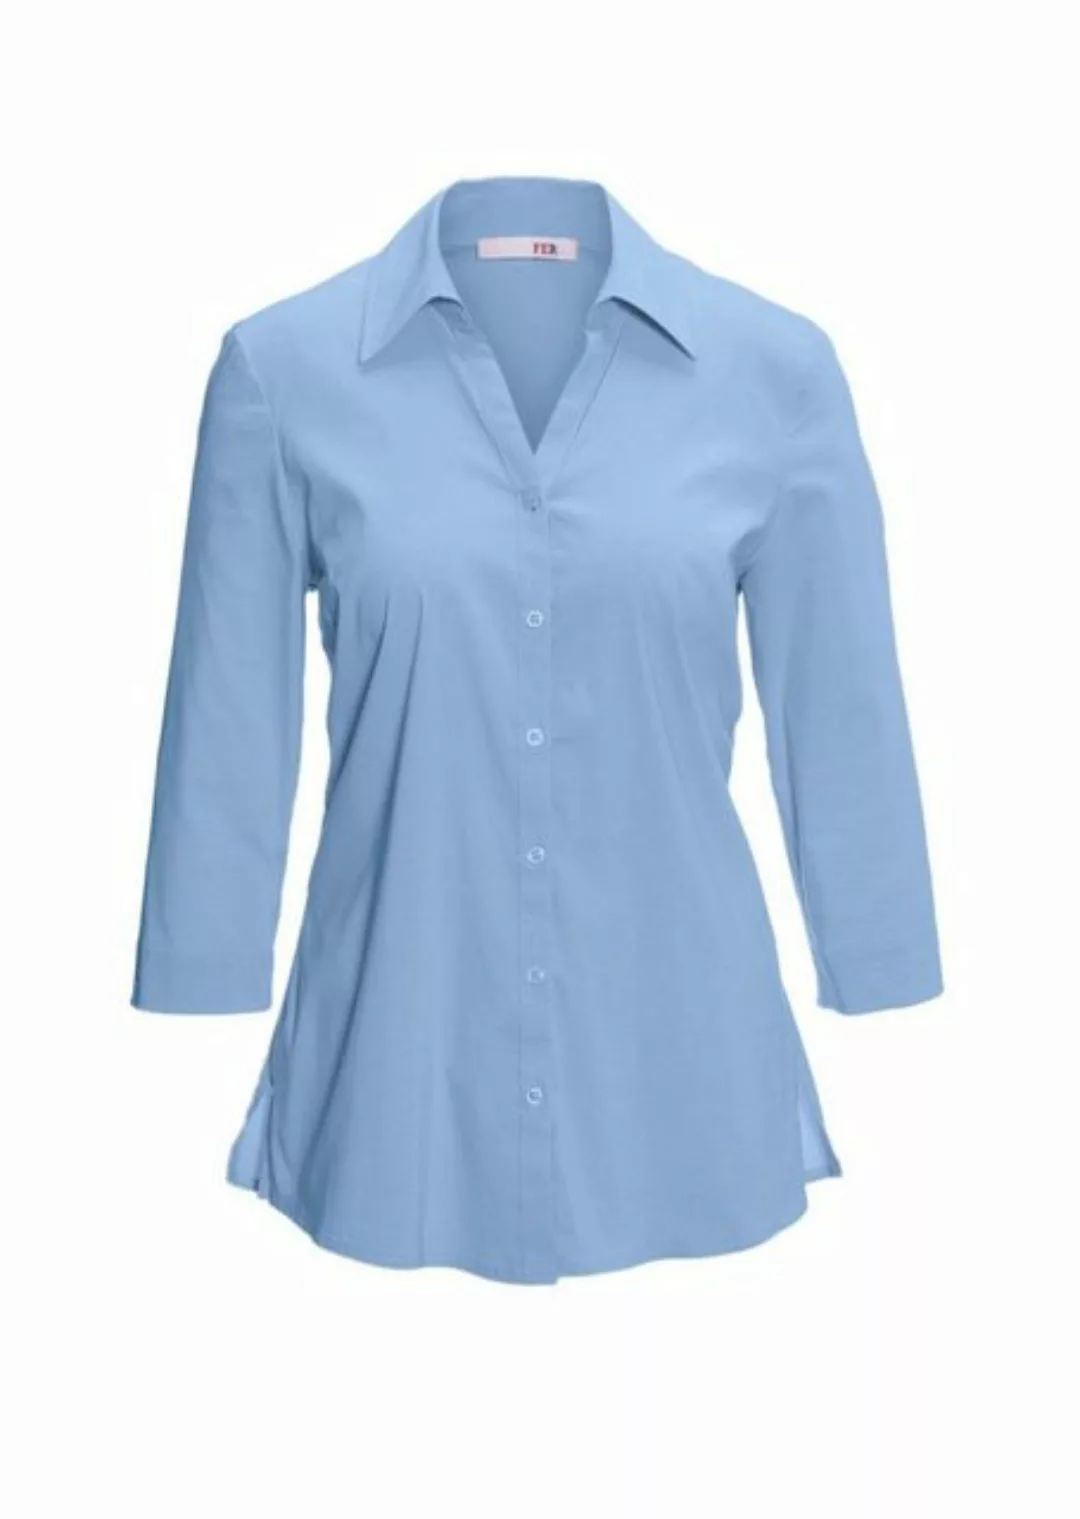 GOLDNER Hemdbluse Kurzgröße: Stretchbequeme Bluse mit Baumwolle günstig online kaufen